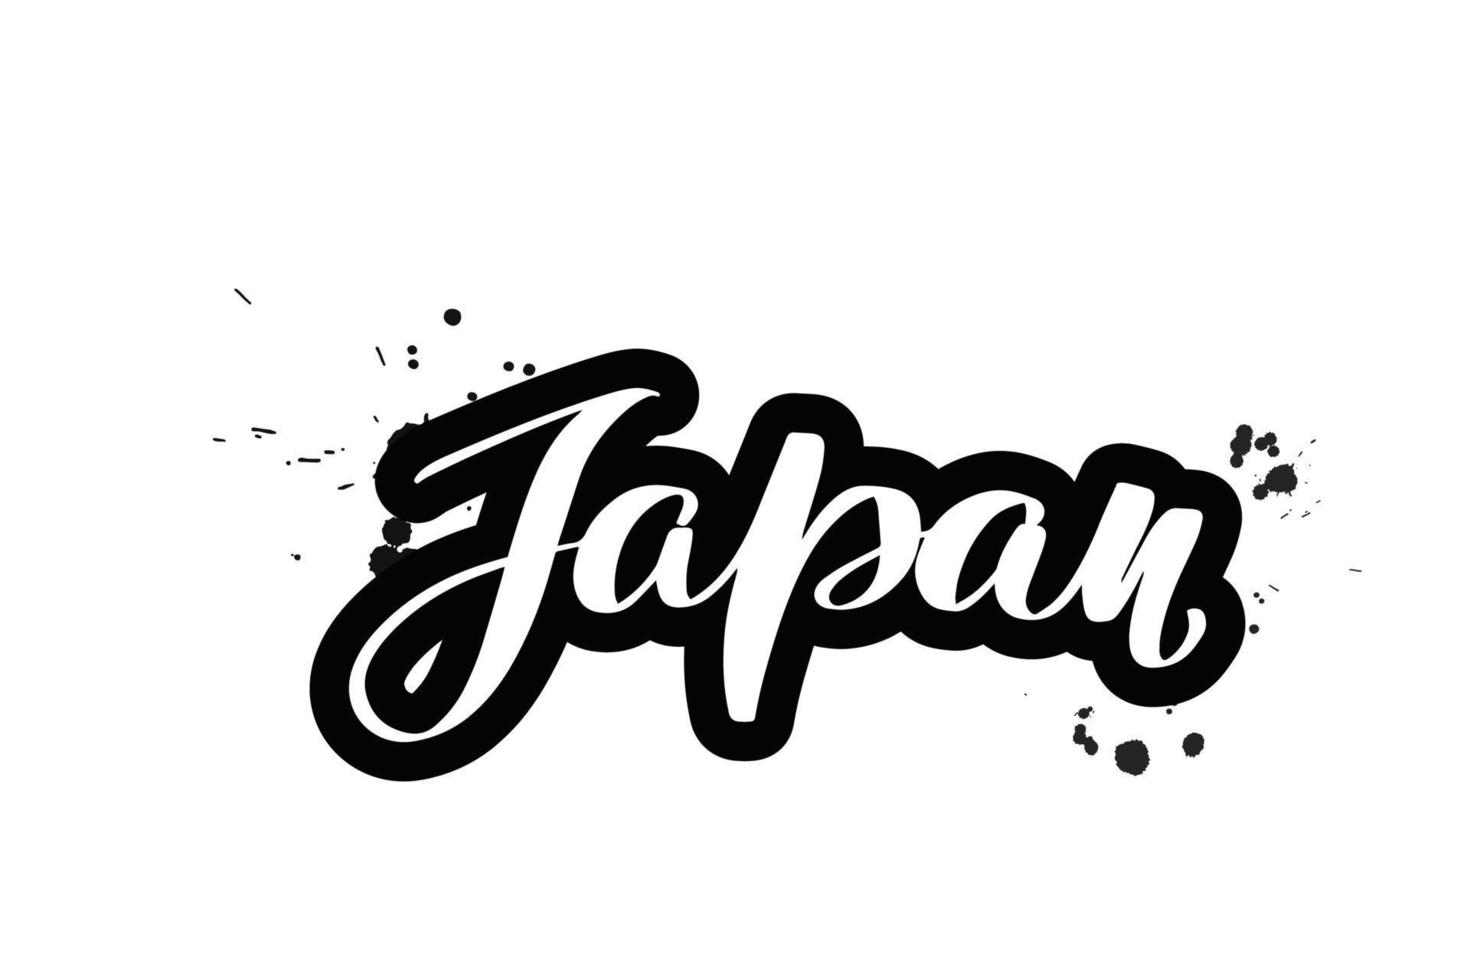 inspirerende handgeschreven borstel belettering japan. vector kalligrafie illustratie geïsoleerd op een witte achtergrond. typografie voor banners, badges, ansichtkaarten, tshirts, prenten, posters.